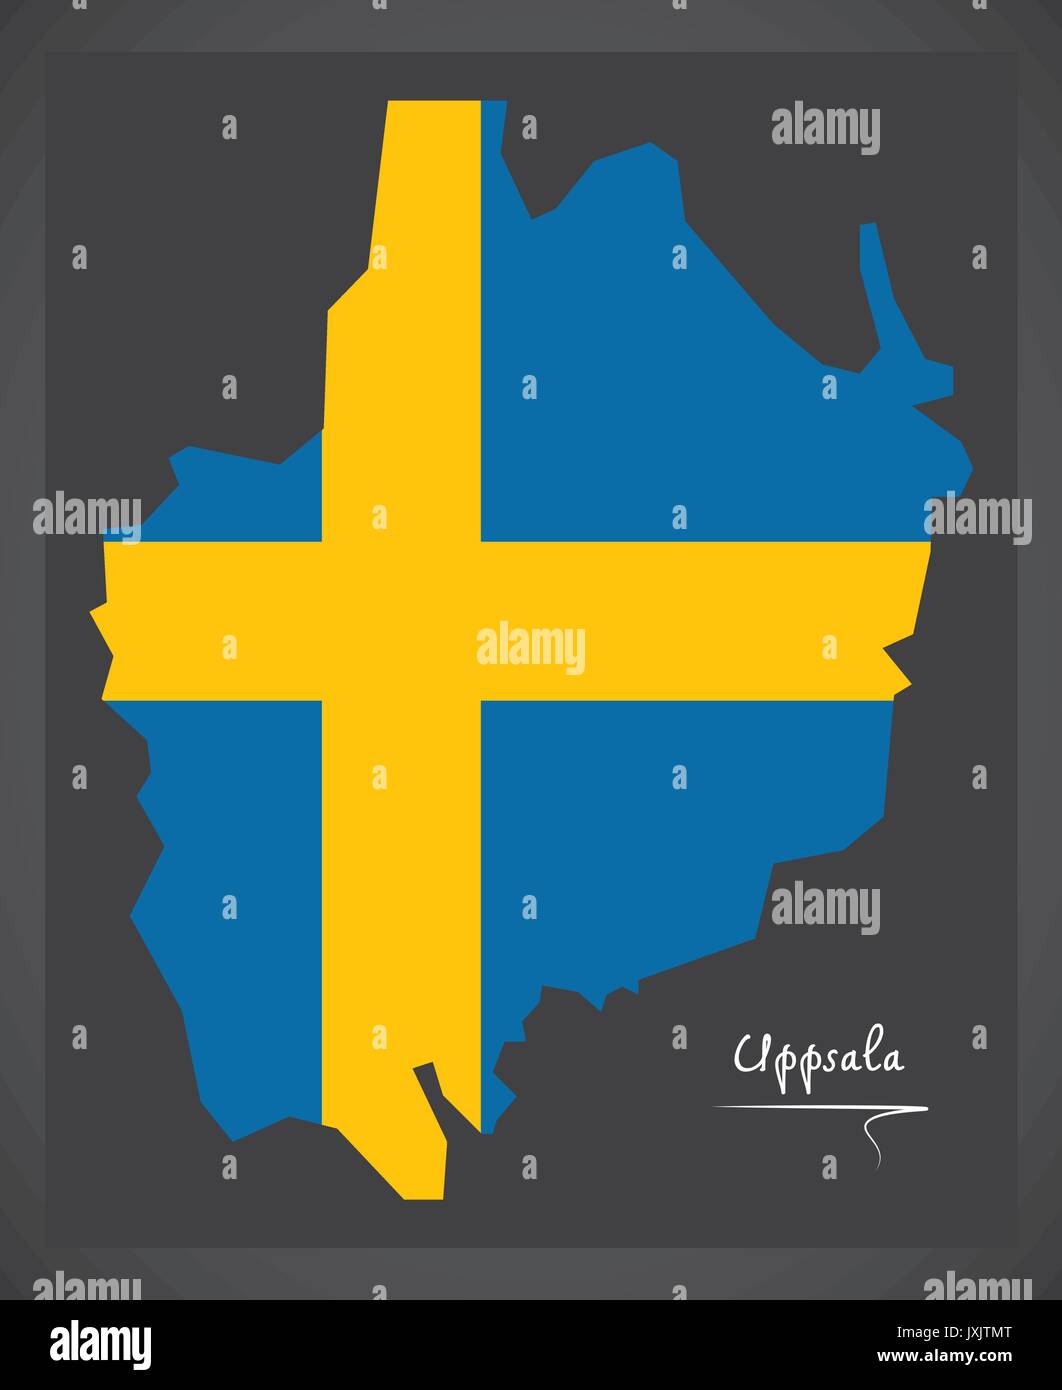 Uppsala mappa della Svezia con la nazionale Svedese illustrazione di bandiera Illustrazione Vettoriale